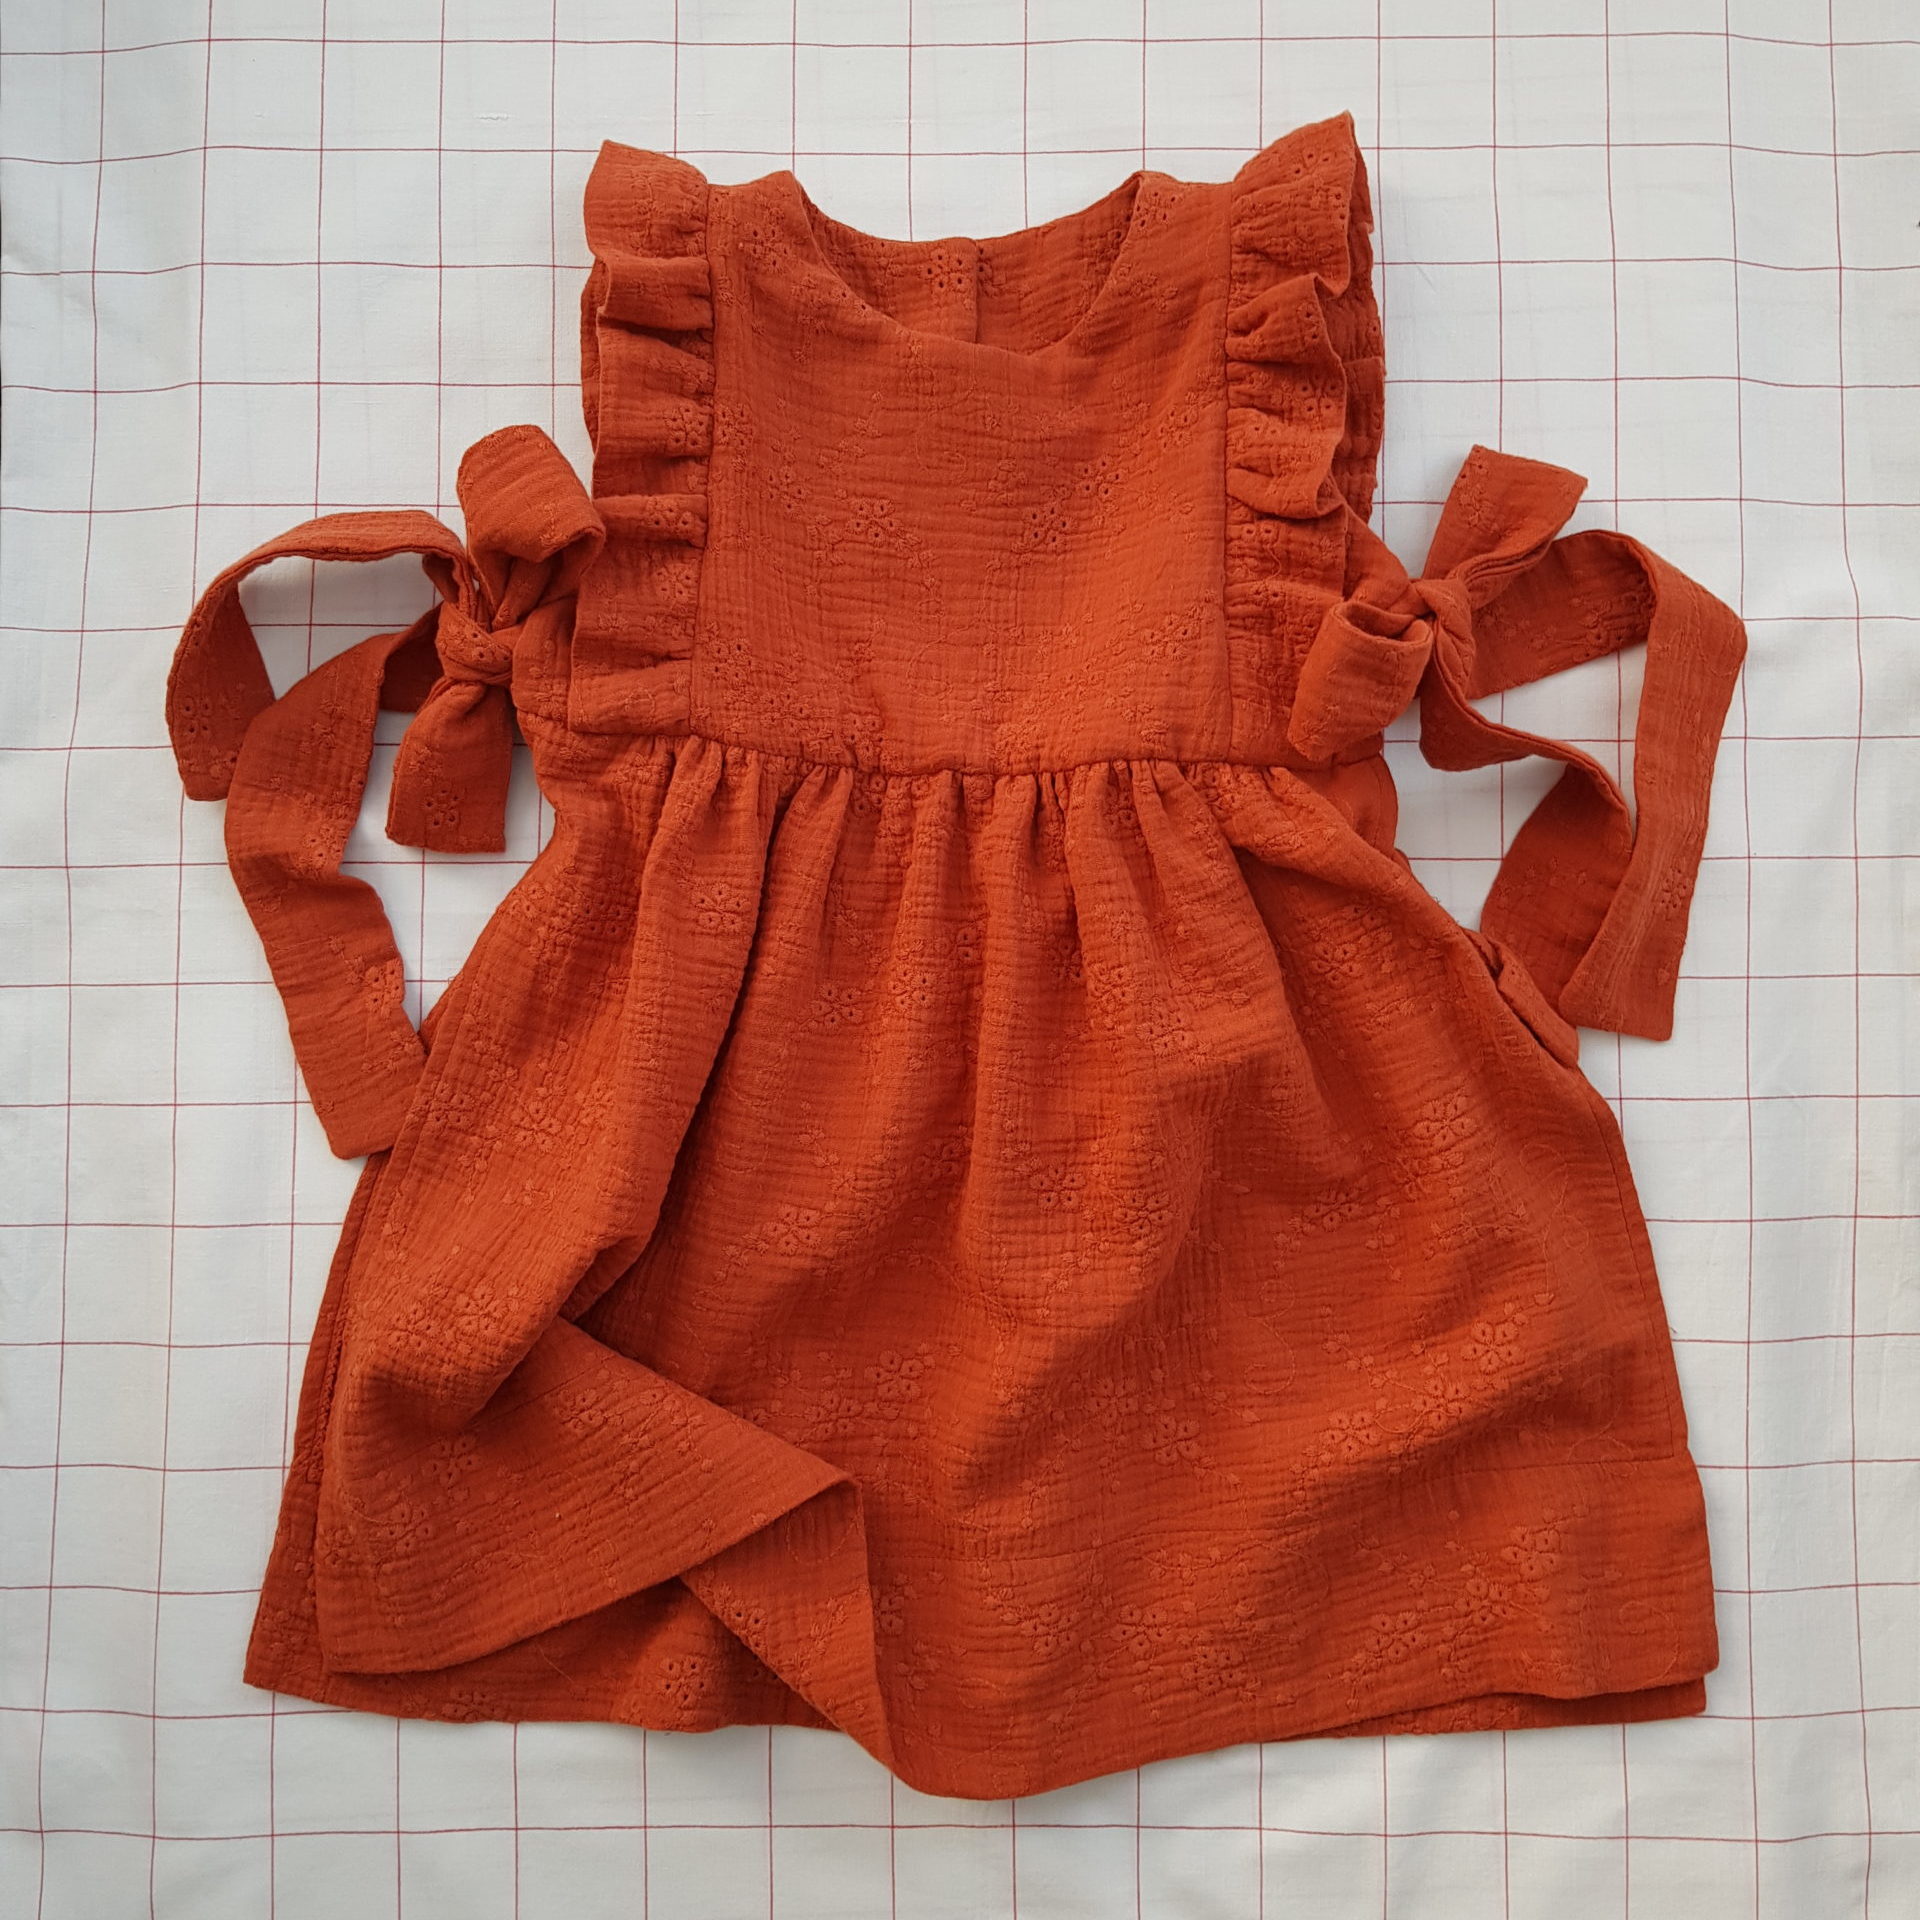 Apron Dress Emma Sewing Pattern